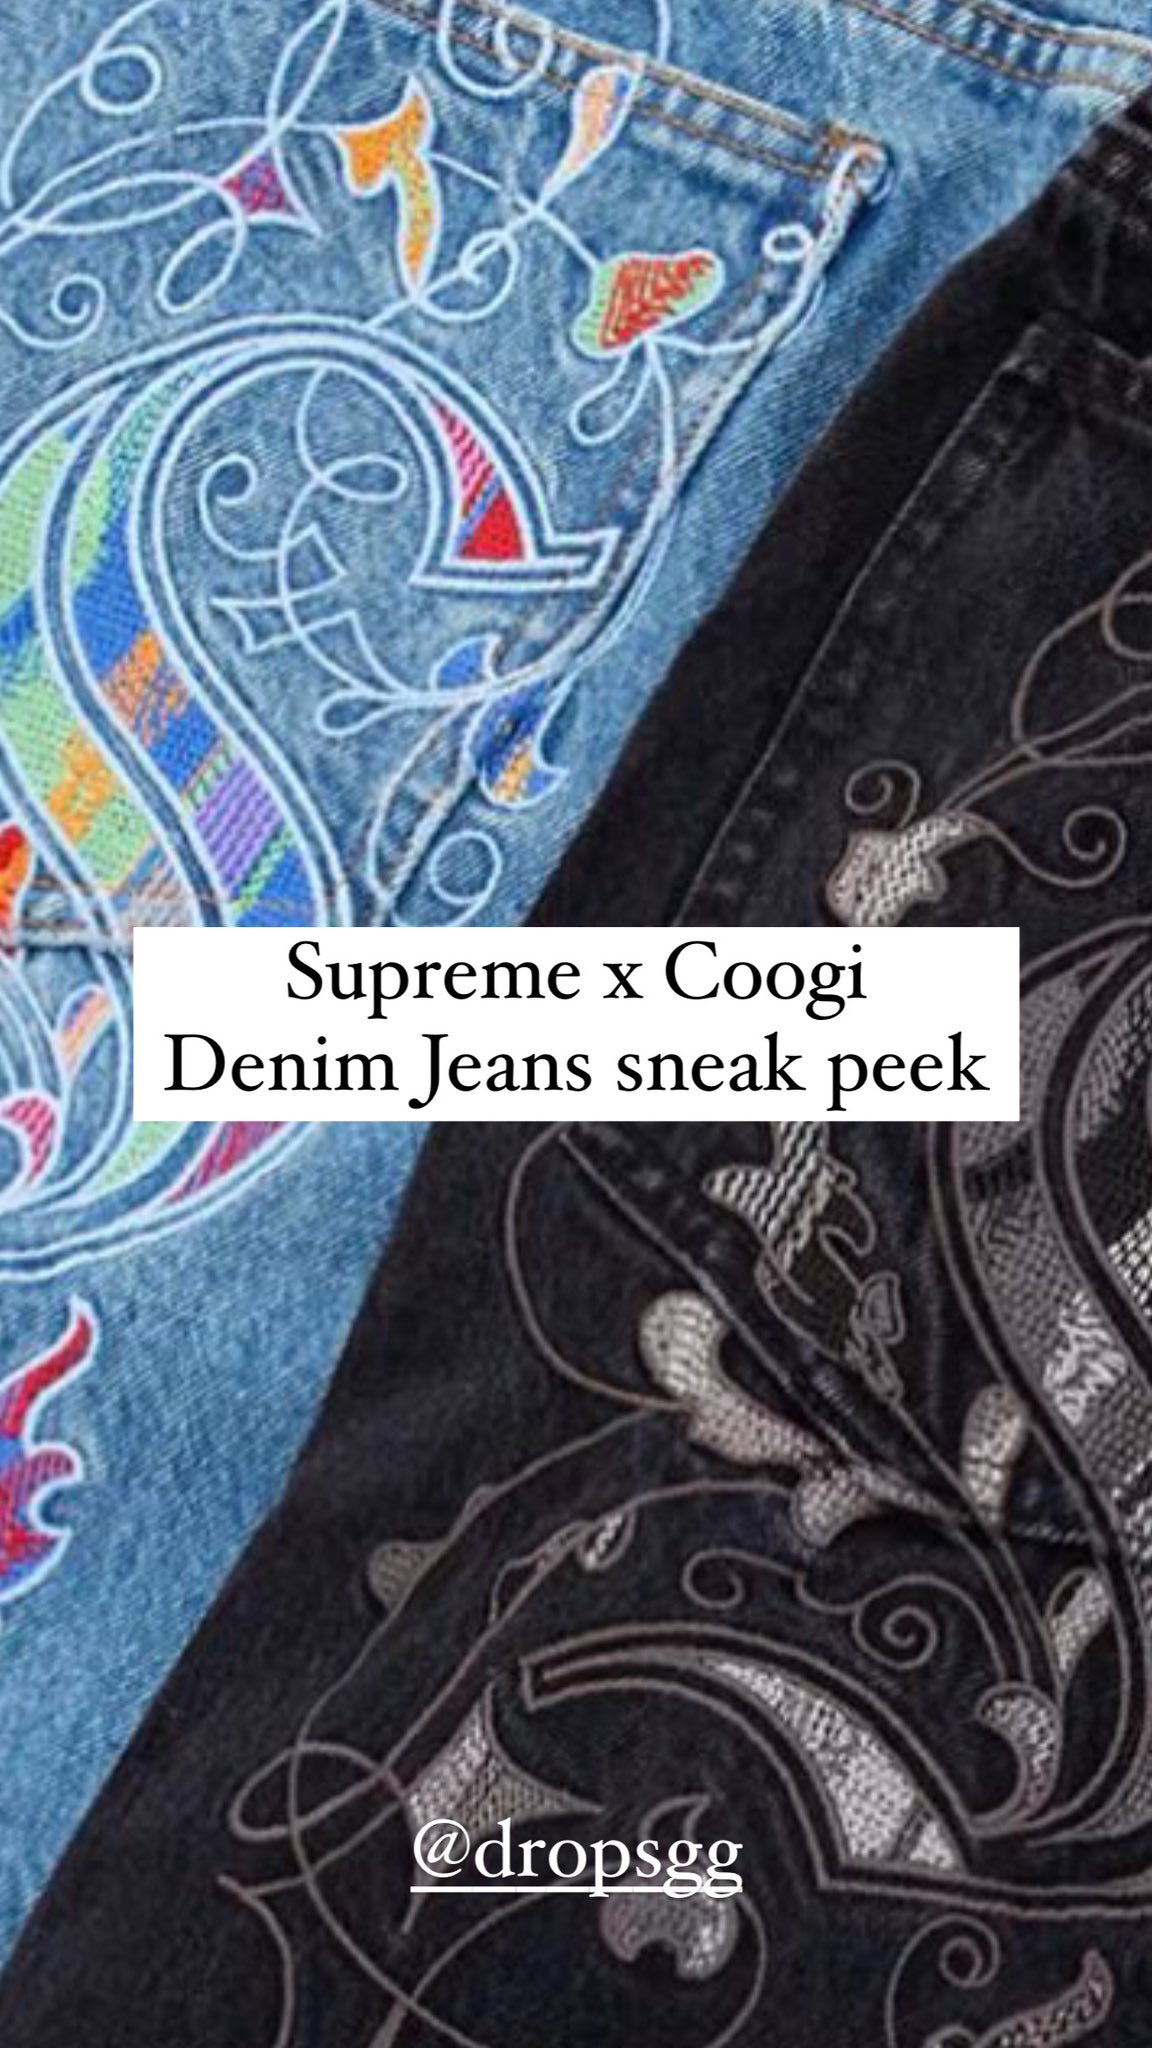 Supreme Drops on X: Supreme x Coogi Denim Jeans sneak peek https